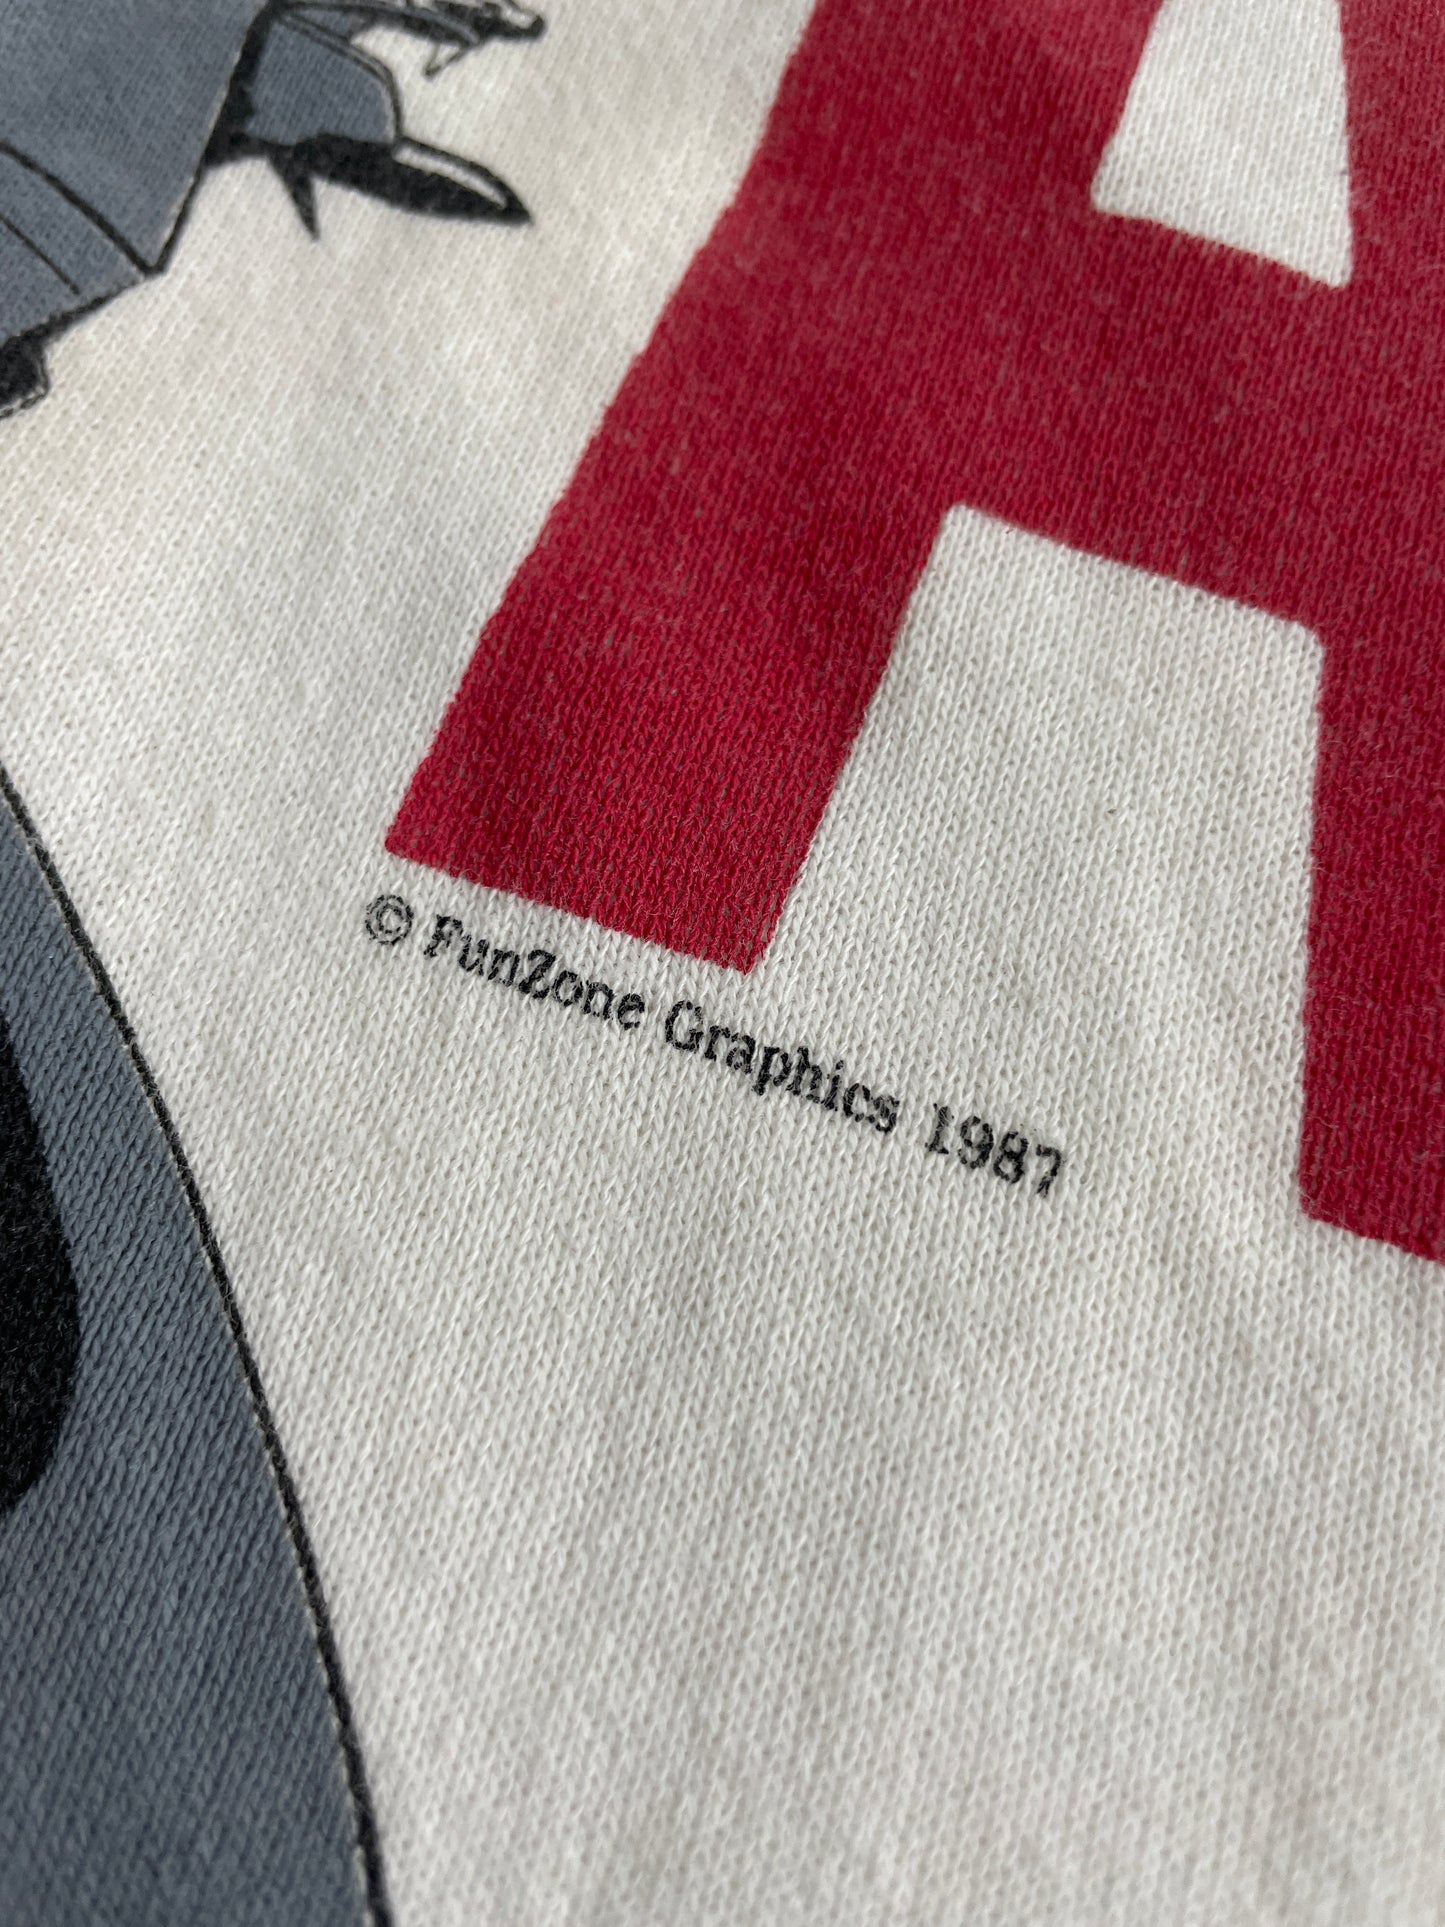 '87 Fightertown USA Sweatshirt [M]